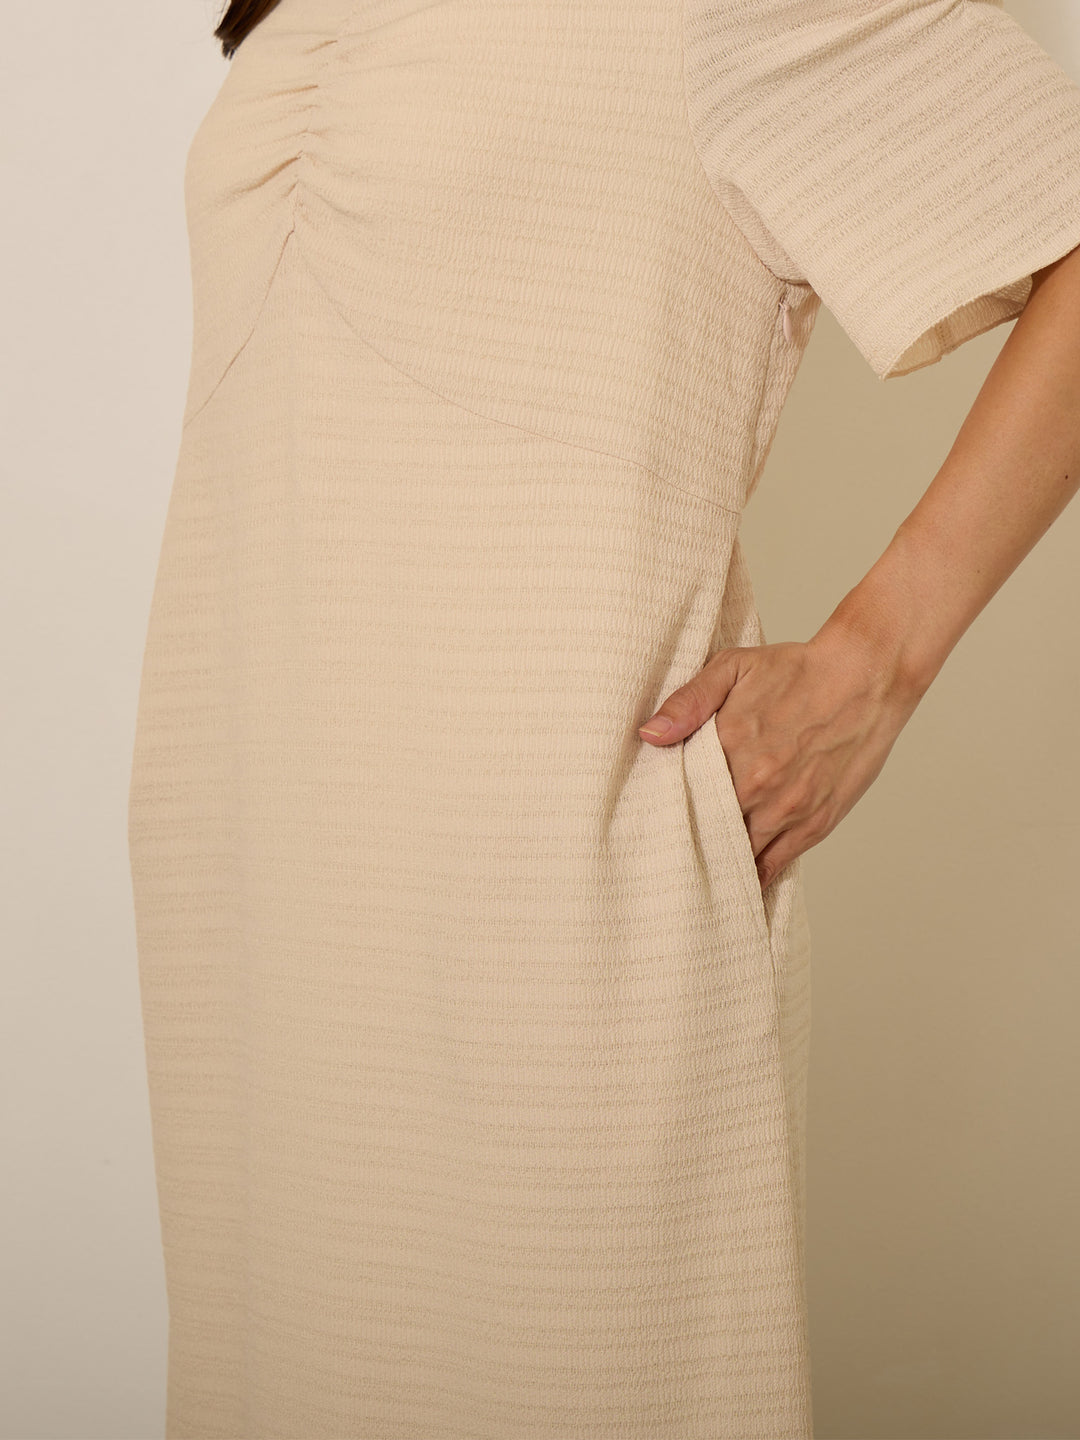 [Maternity/nursing clothes] Power shoulder I-line dress Beige 